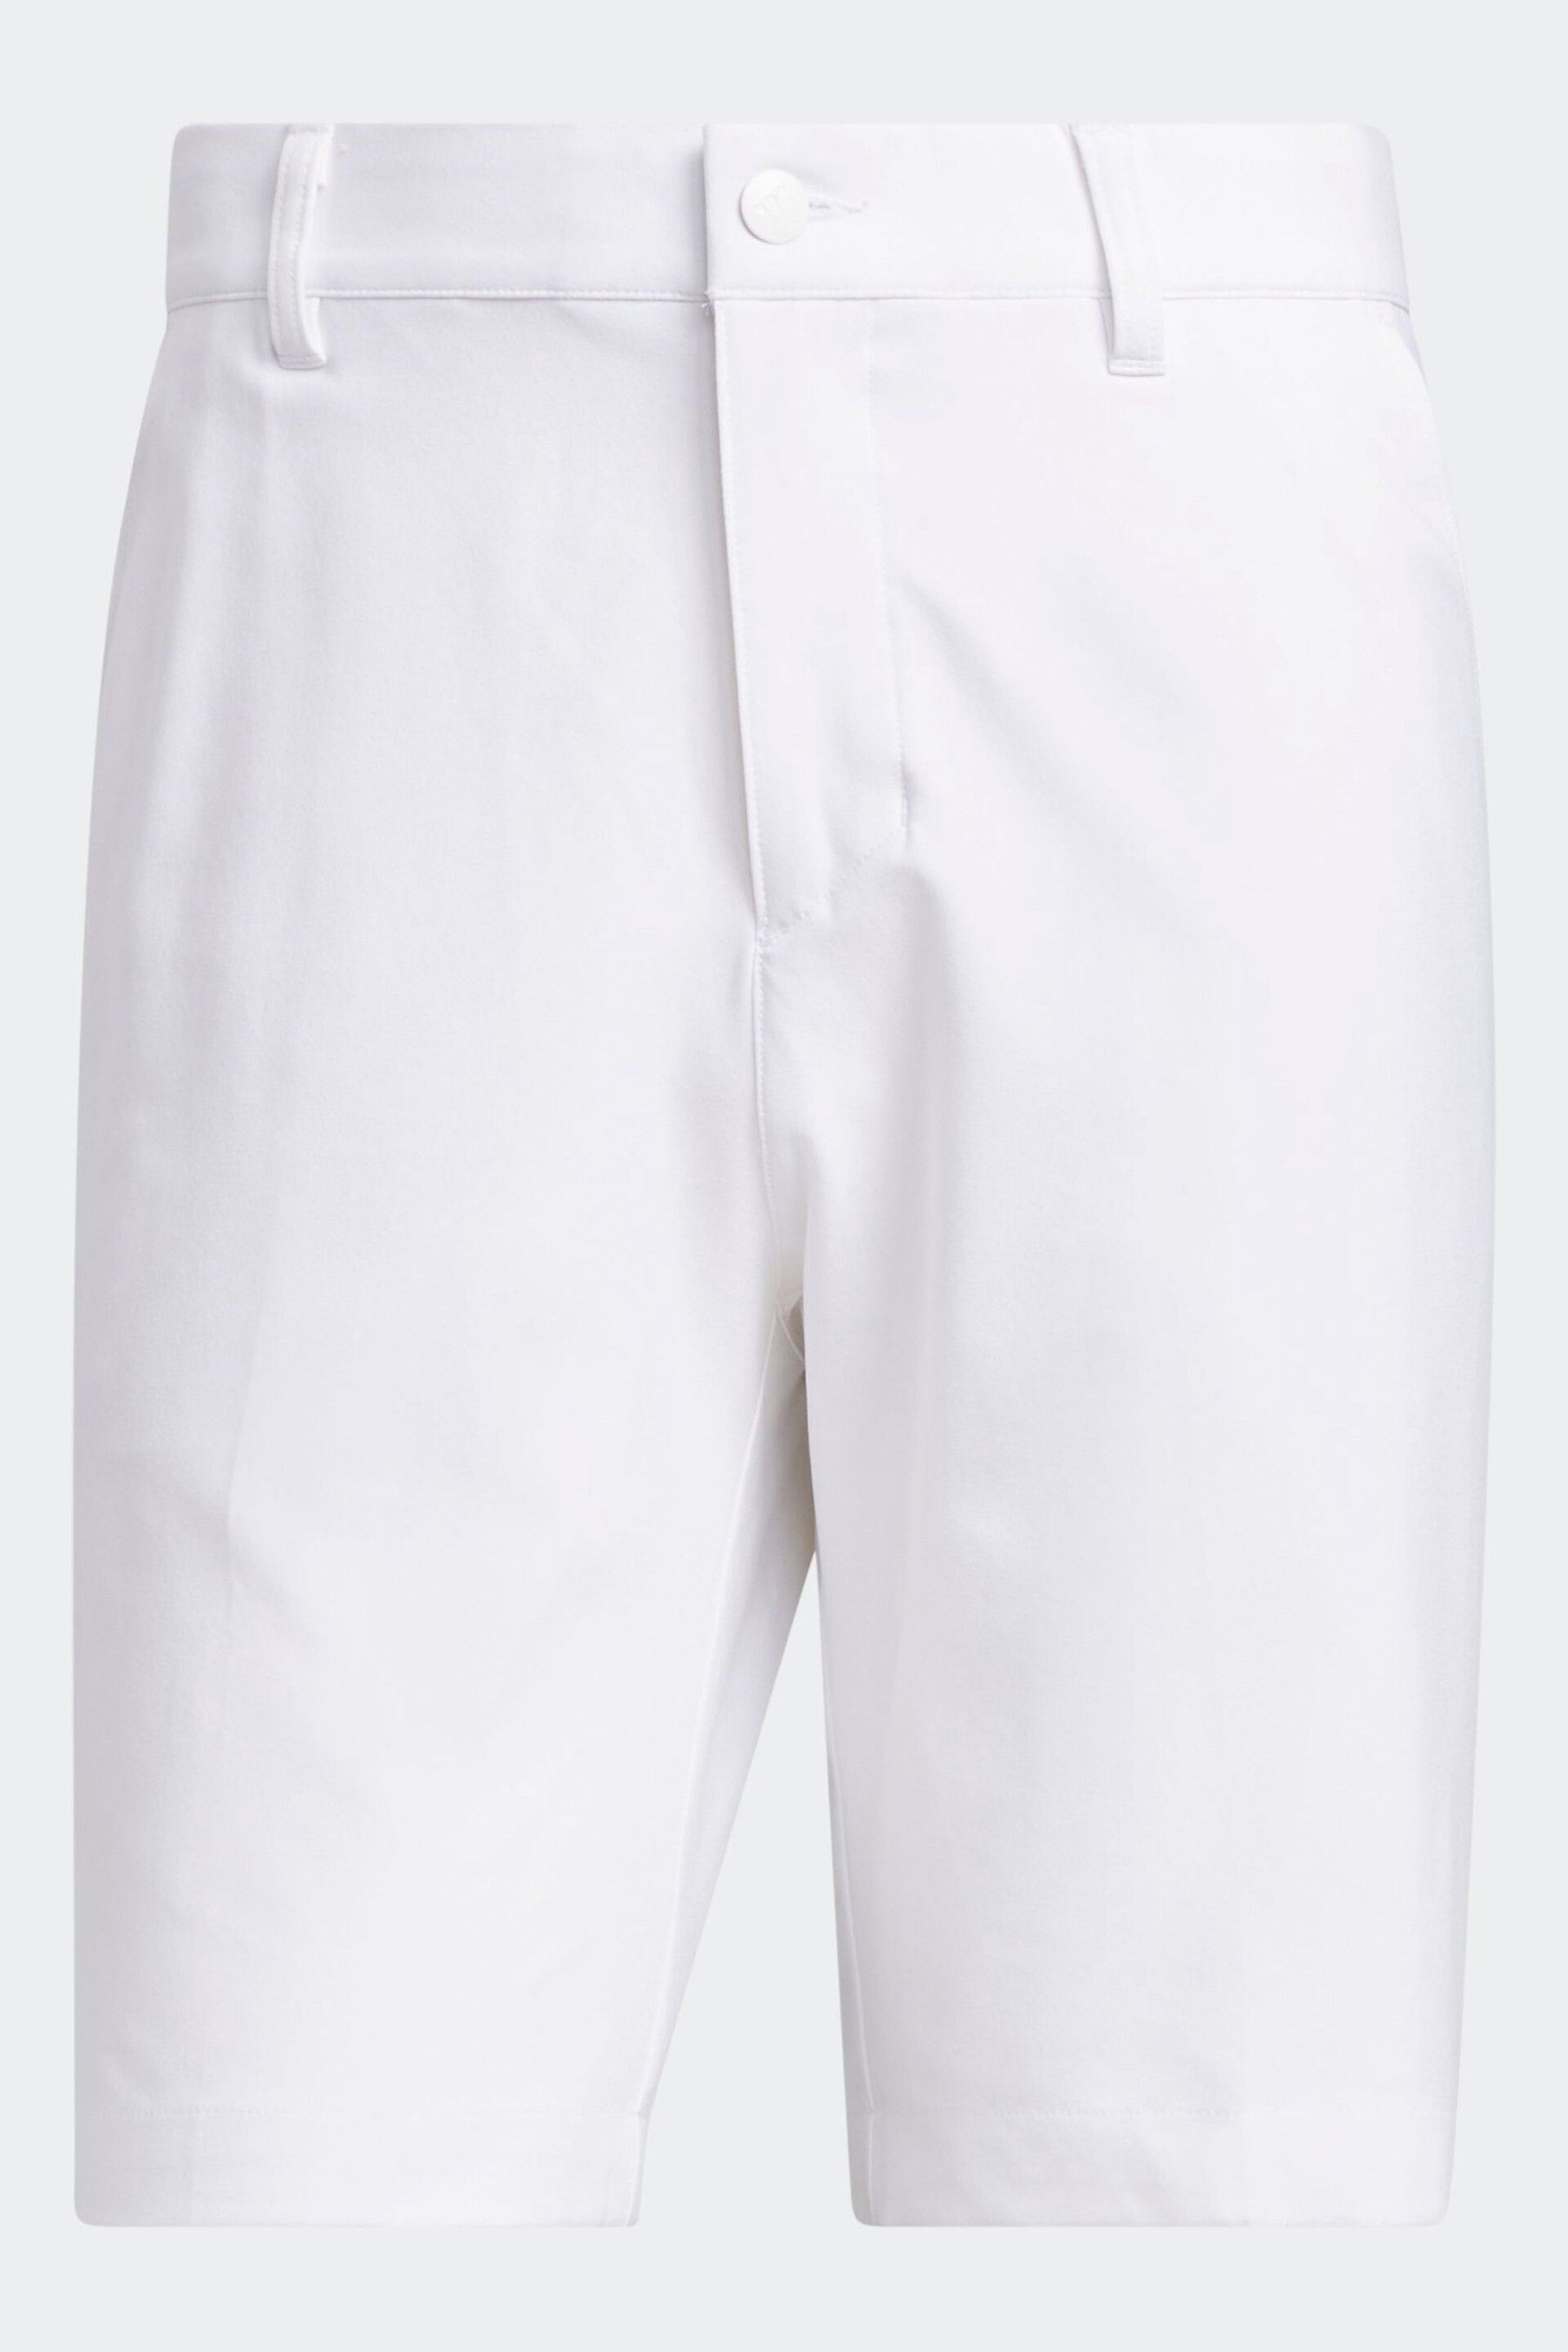 adidas Golf Utility White Shorts - Image 6 of 6